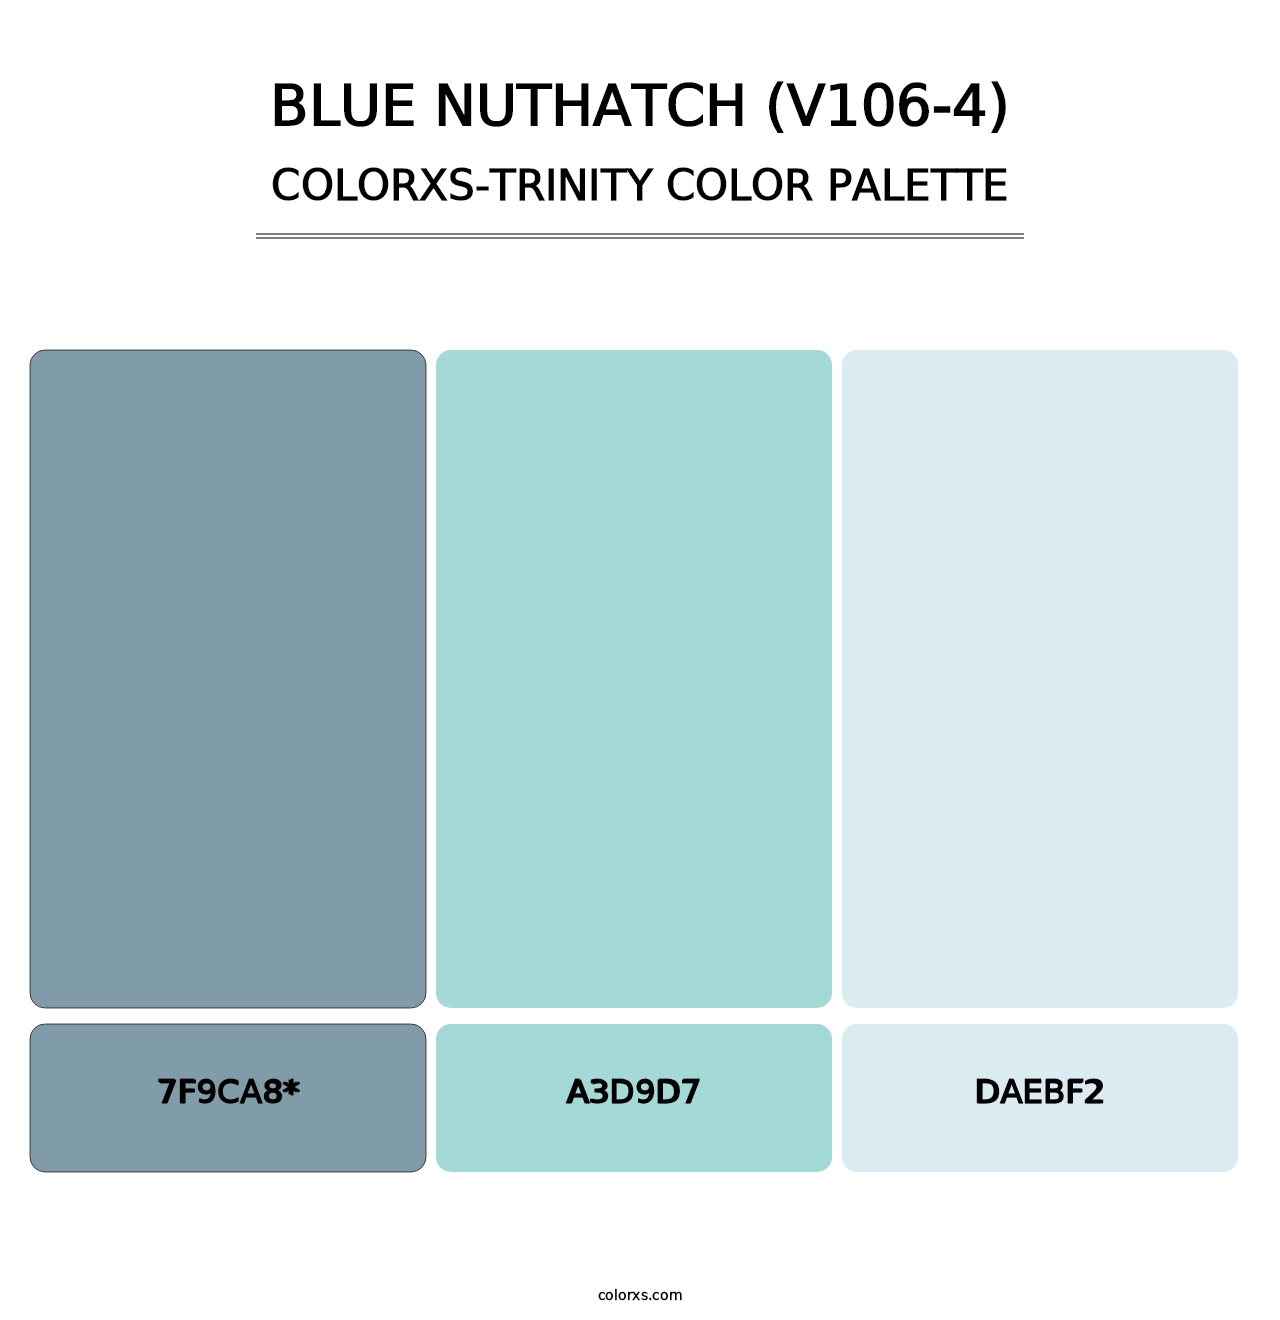 Blue Nuthatch (V106-4) - Colorxs Trinity Palette